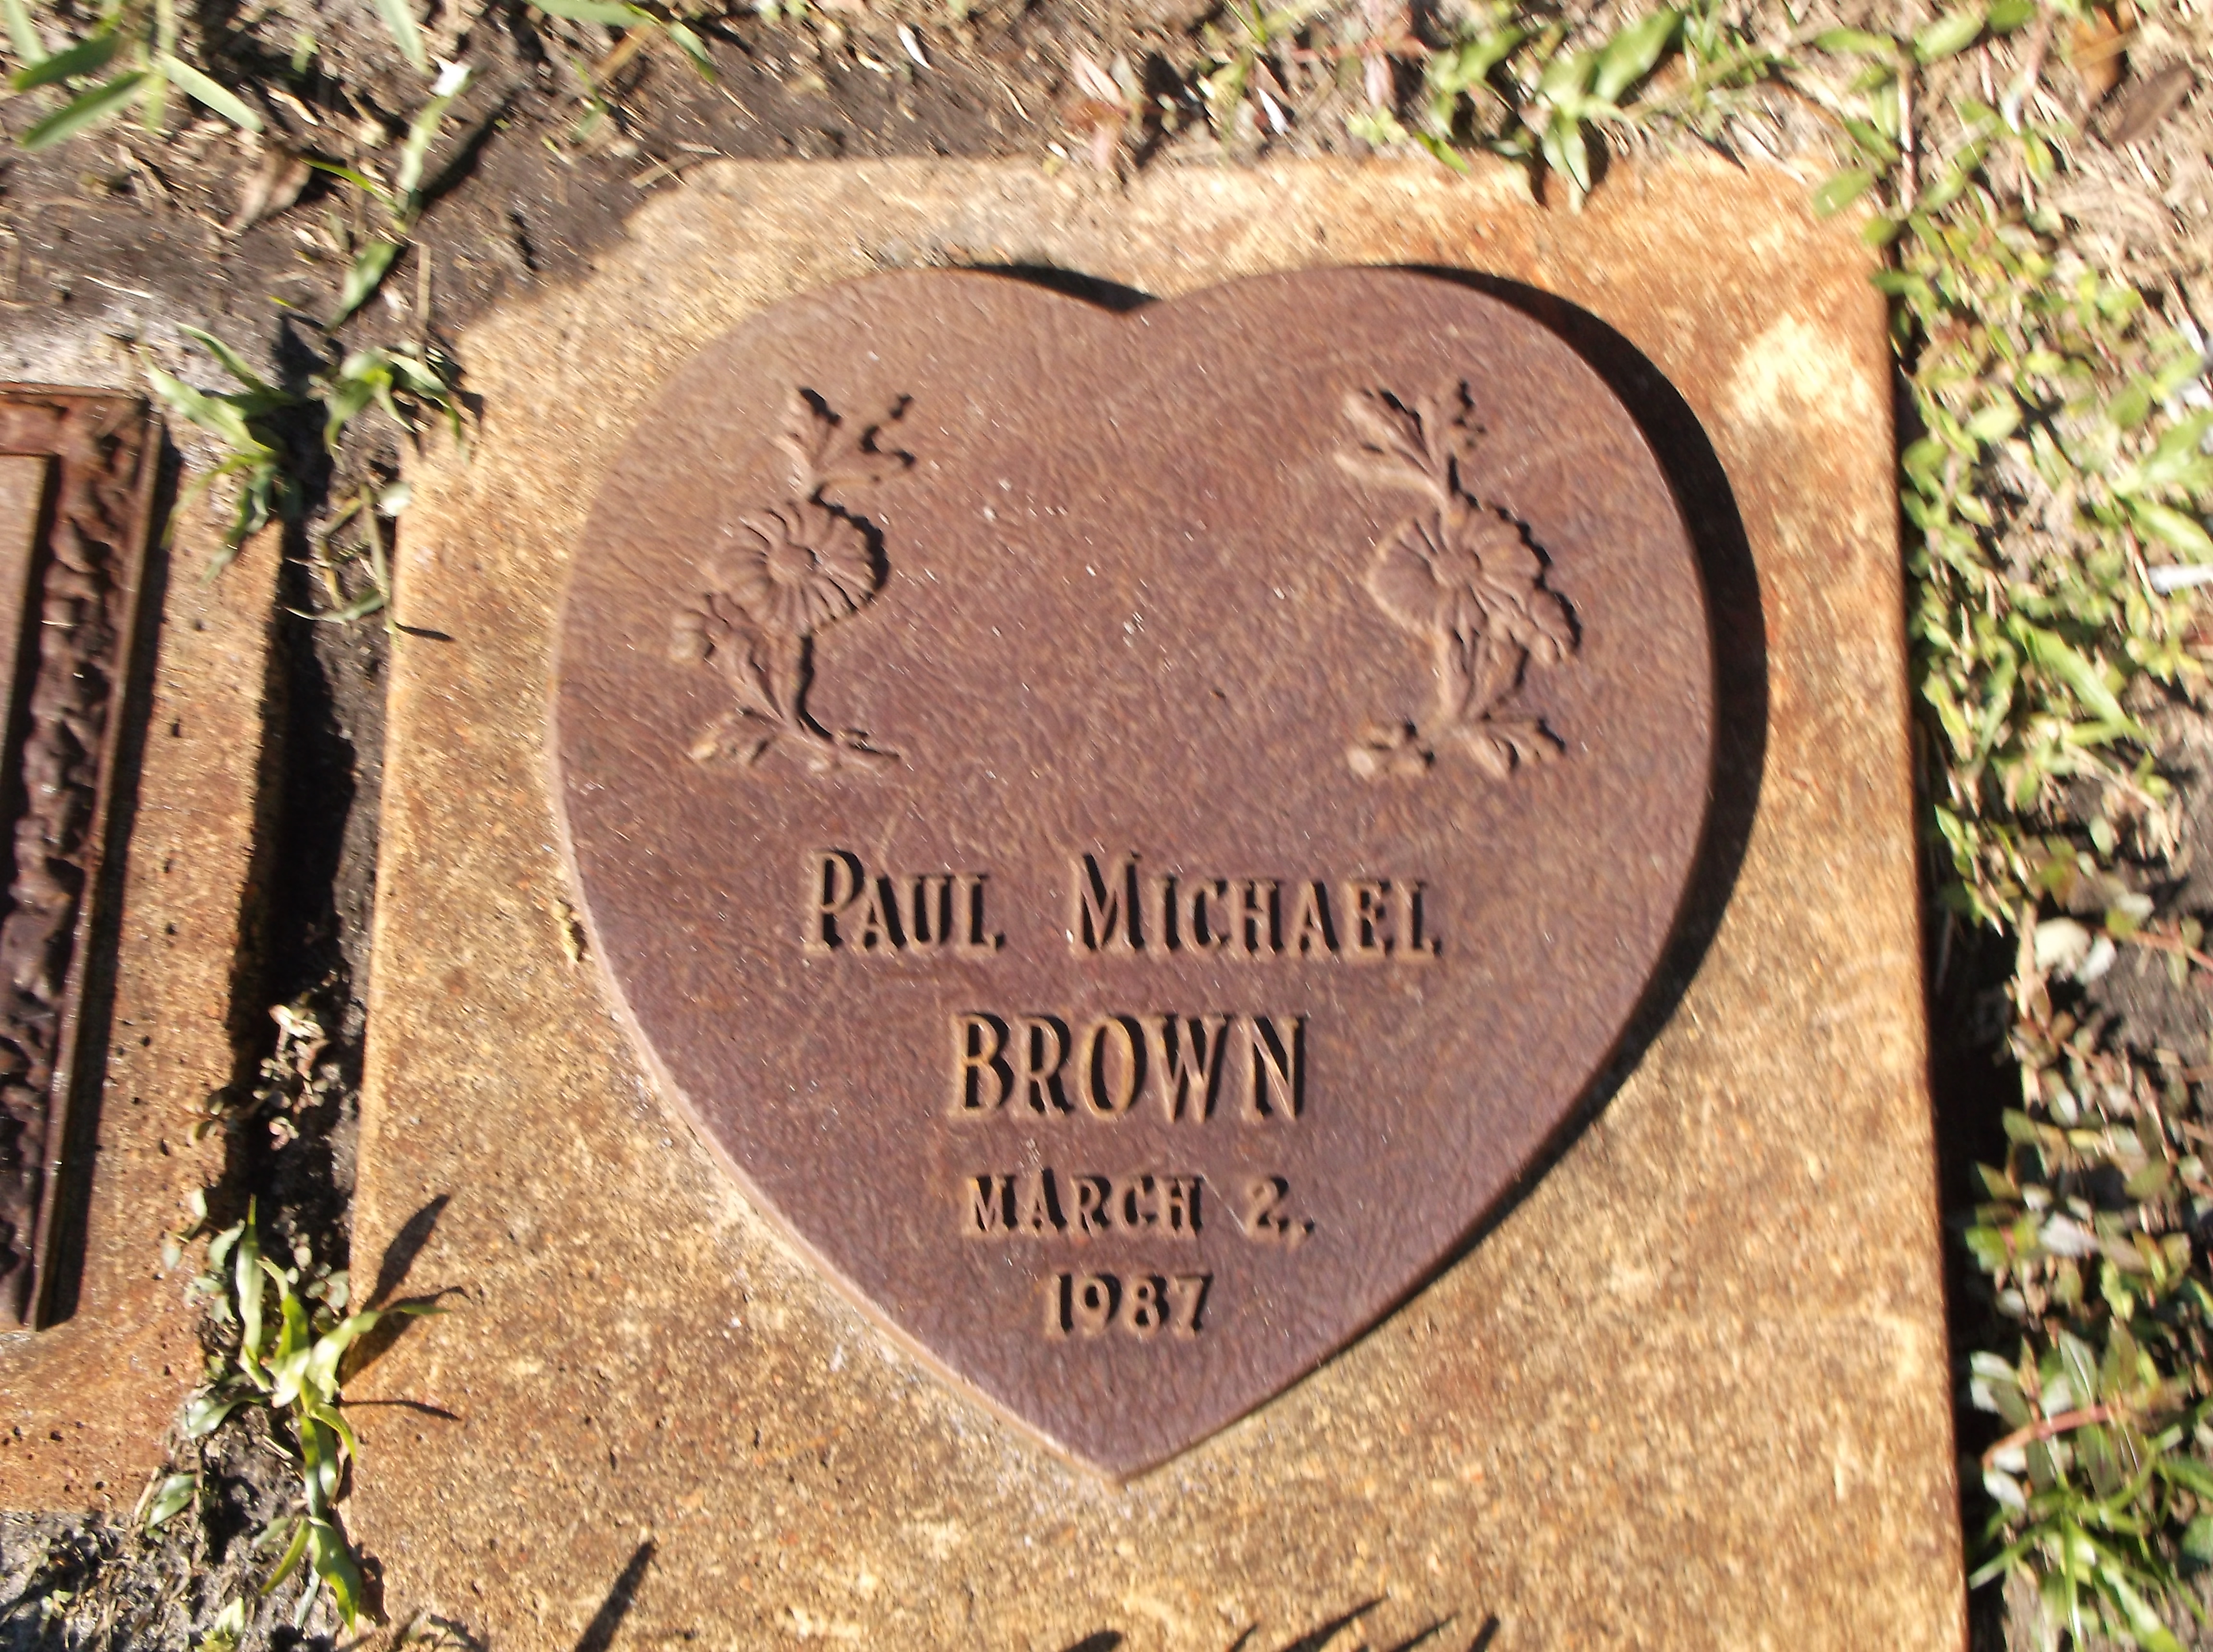 Paul Michael Brown